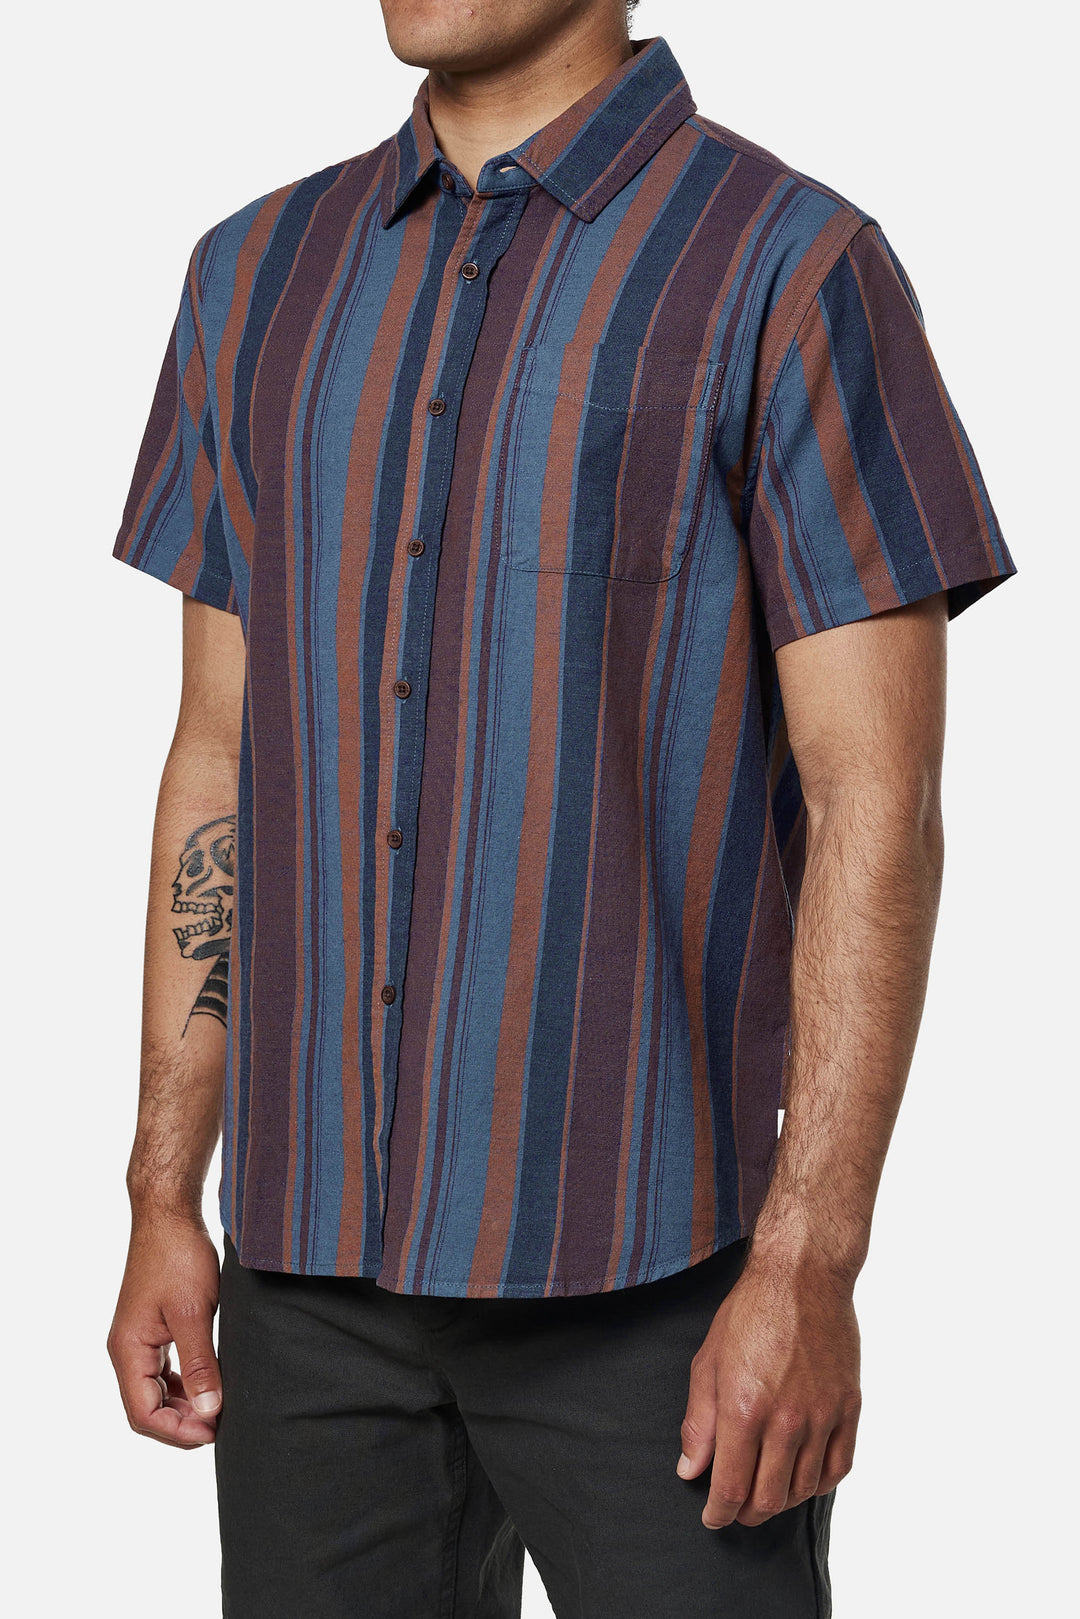 Katin York Shirt - CARAMEL - Sun Diego Boardshop